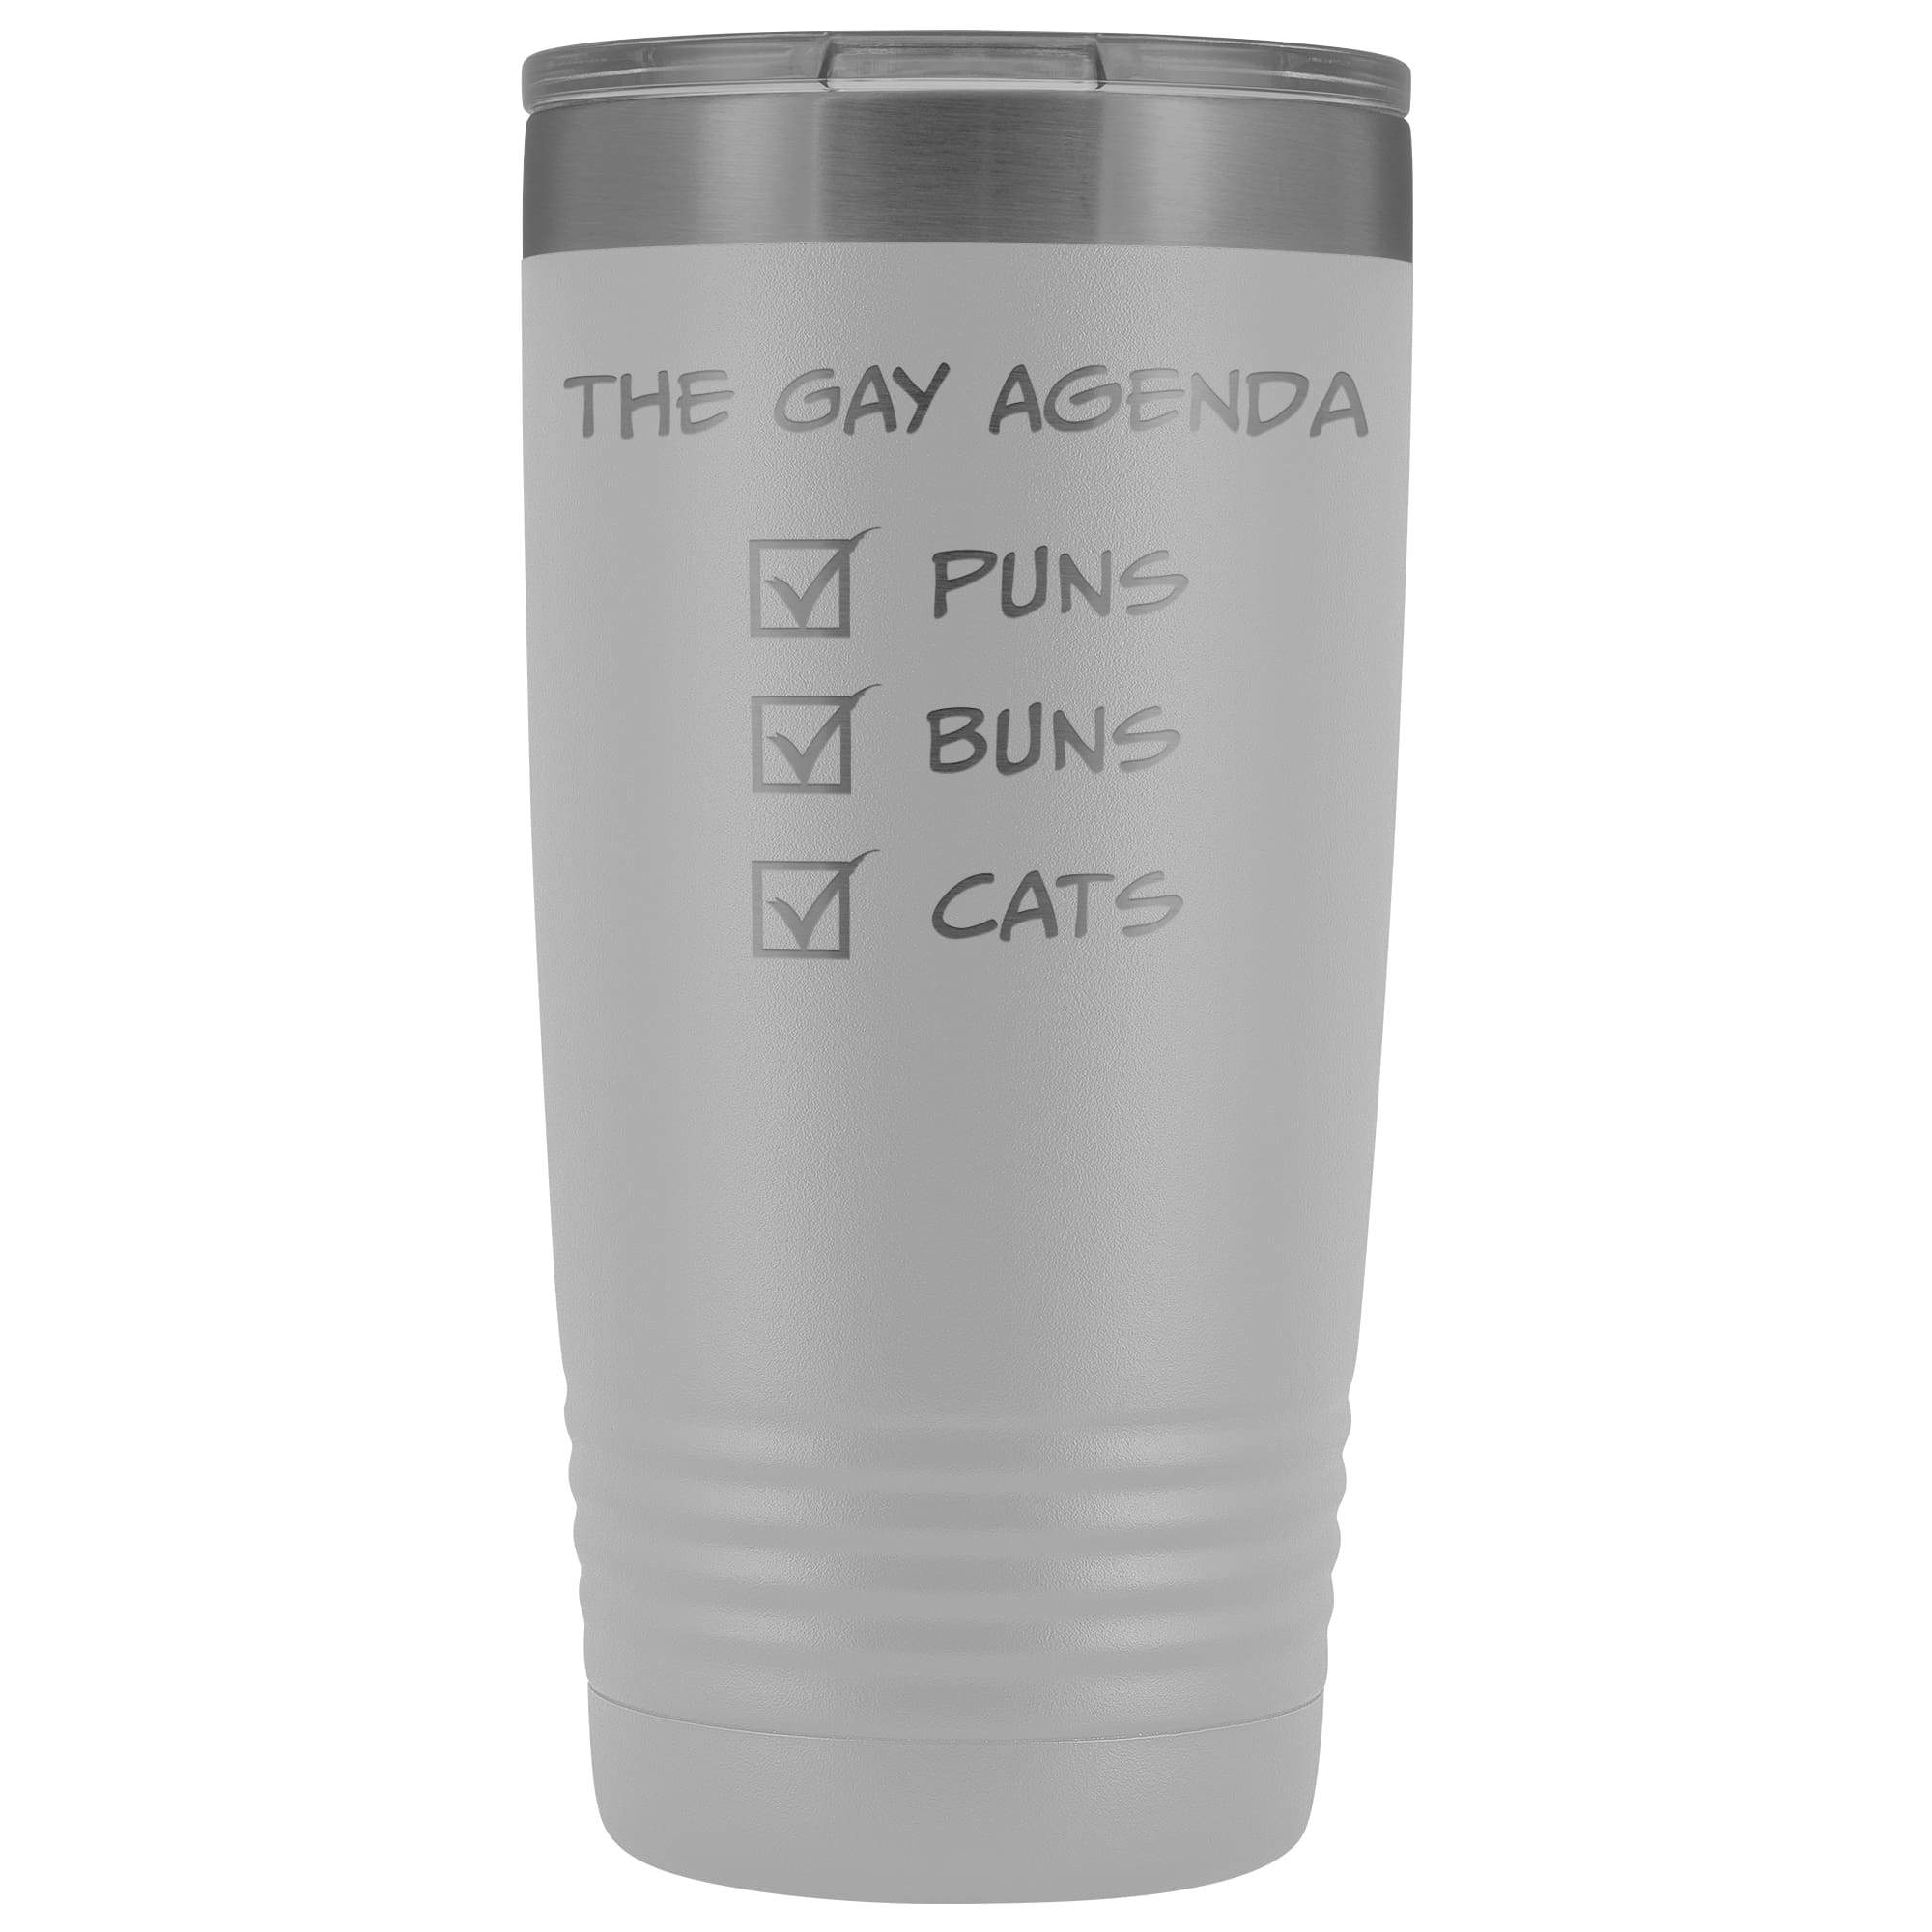 The Gay Agenda - Puns & Buns & Cats 20oz Vacuum Tumbler - White - Tumblers